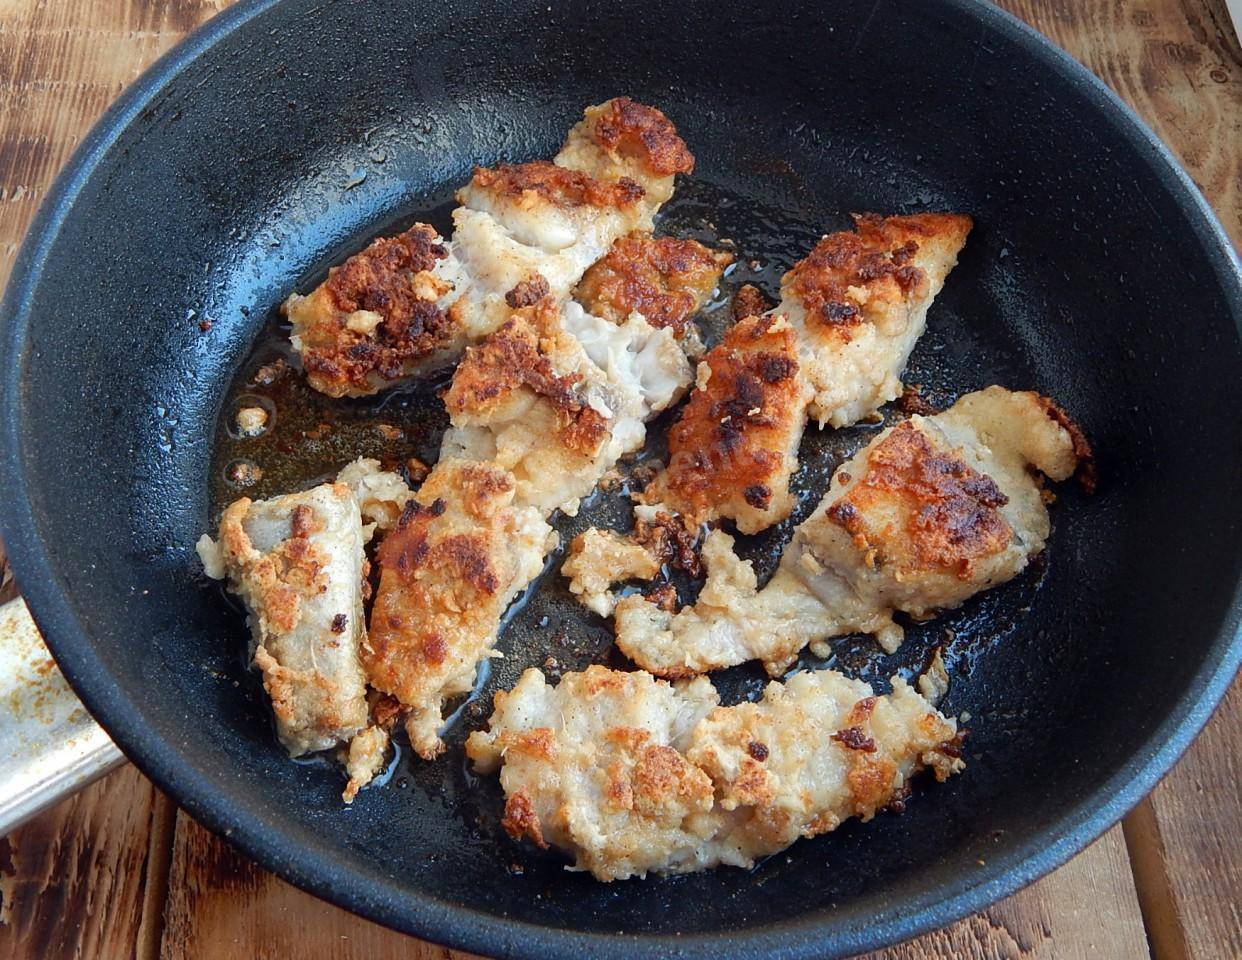 Жареный морской окунь: 6 рецептов, как вкусно пожарить морского окуня на сковороде (+отзывы)